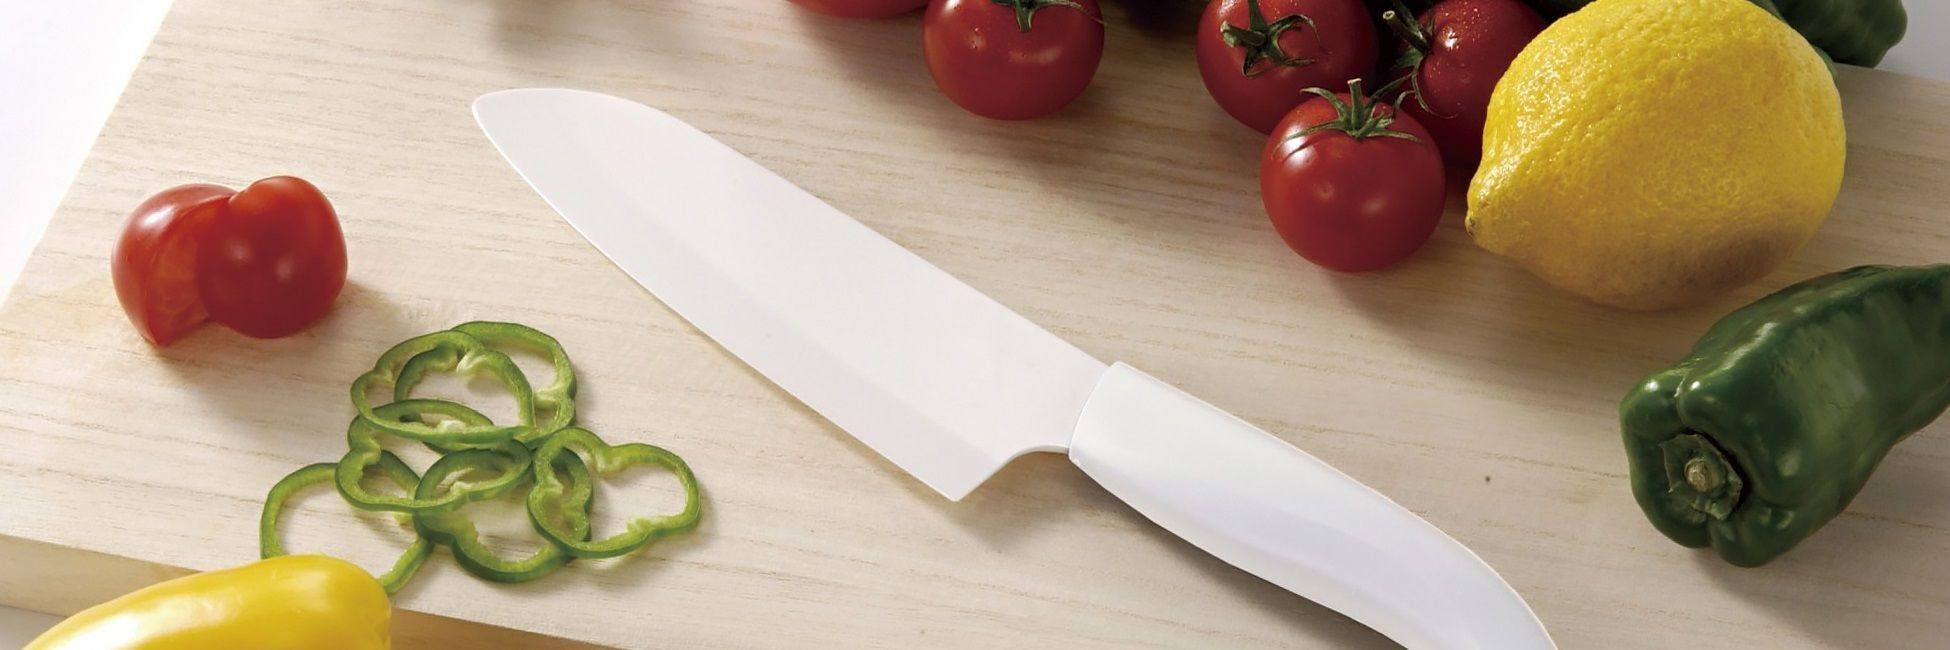 Как выбрать правильный нож для вашей кухни?